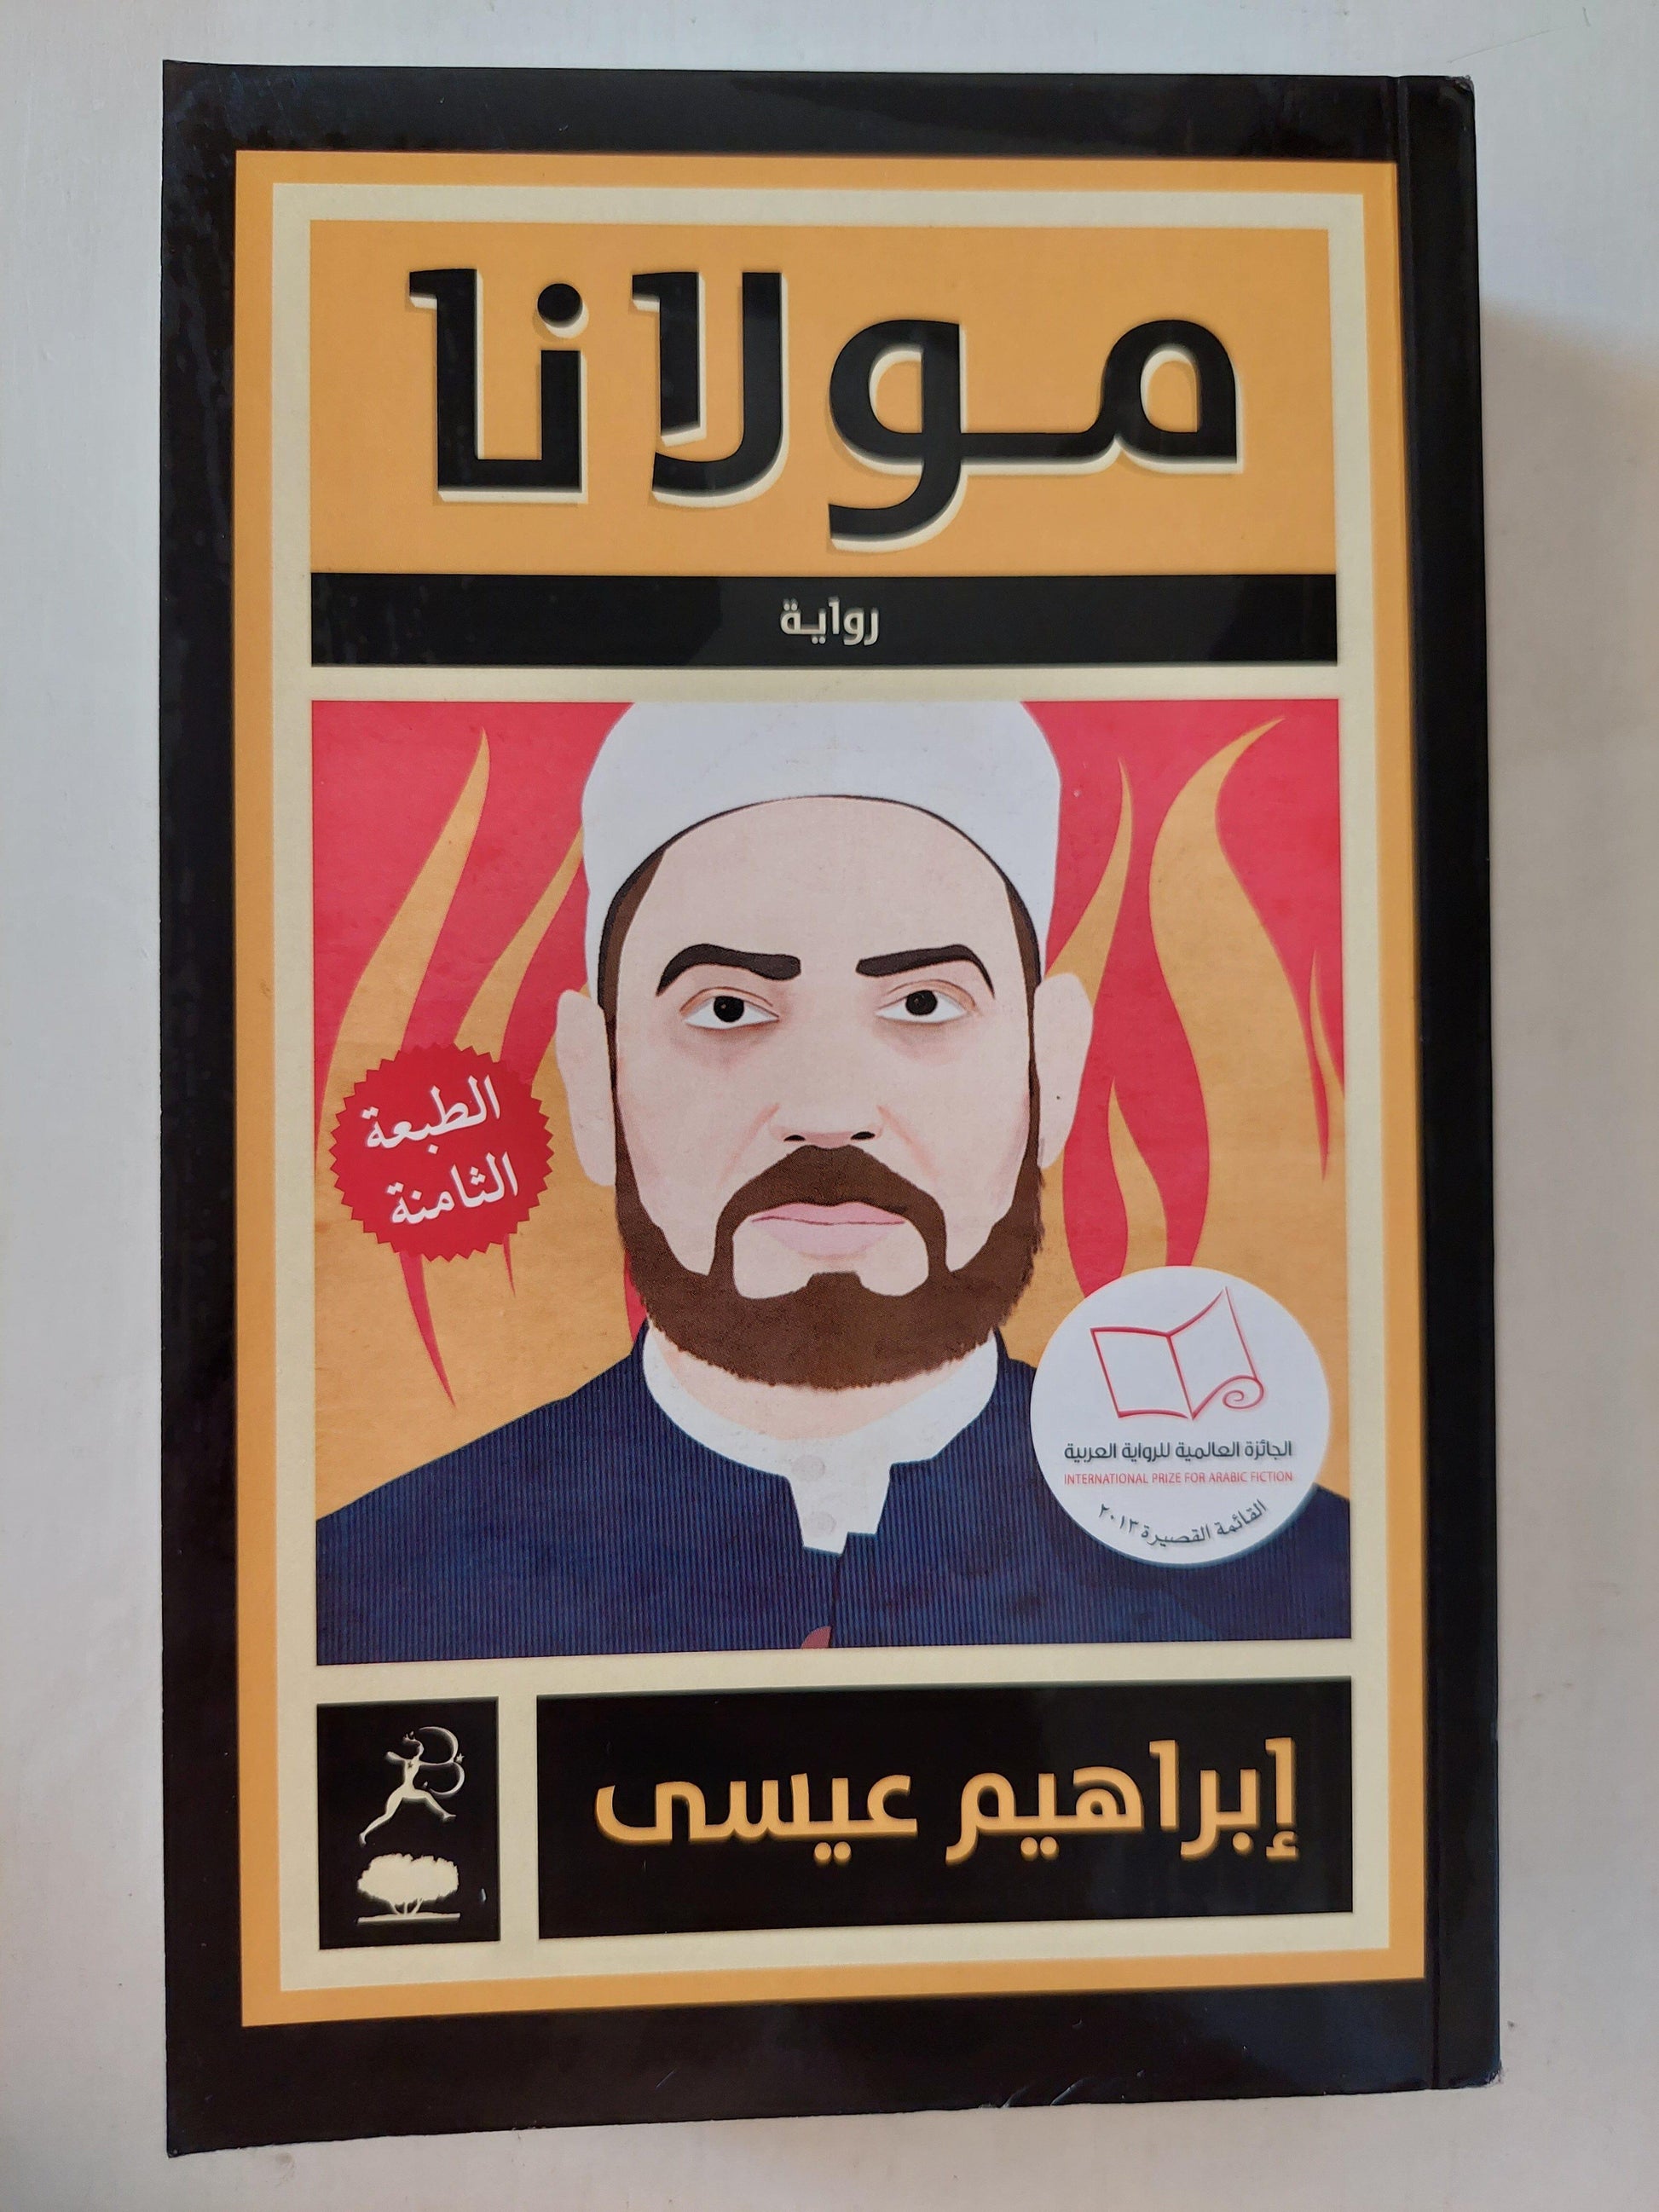 مولانا - إبراهيم عيسي / الجائزة العالمية للرواية العربية 2013 - متجر كتب مصر